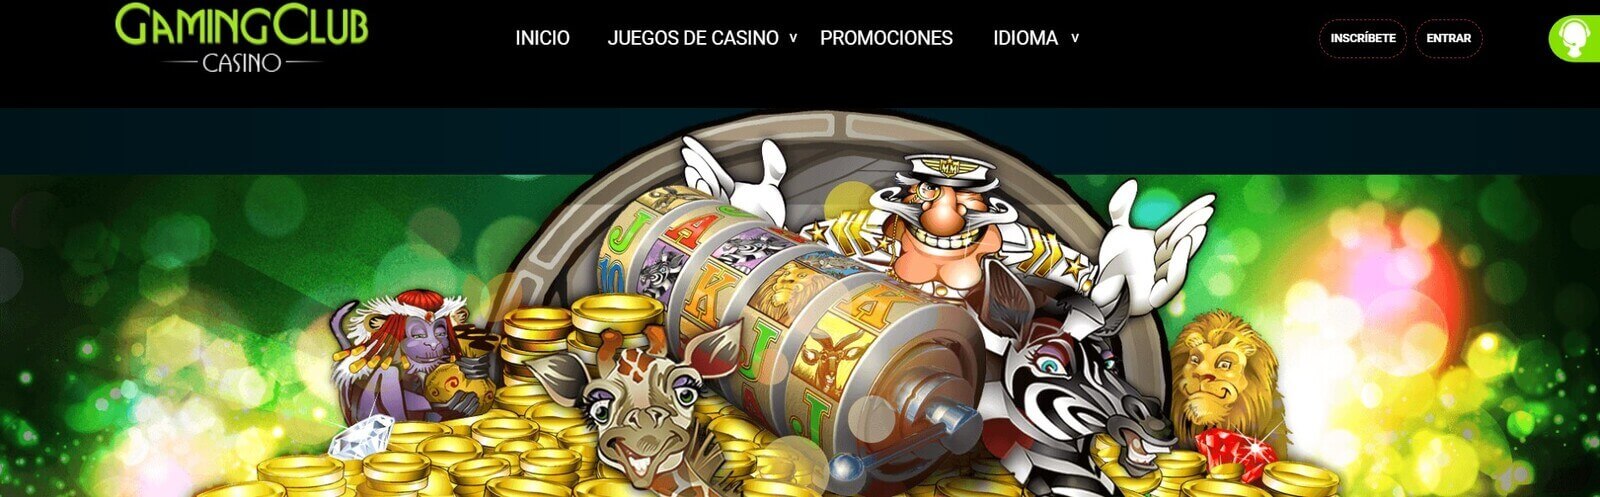 Gaming Club   Juega a las mejores tragamonedas en Gaming Club casino online